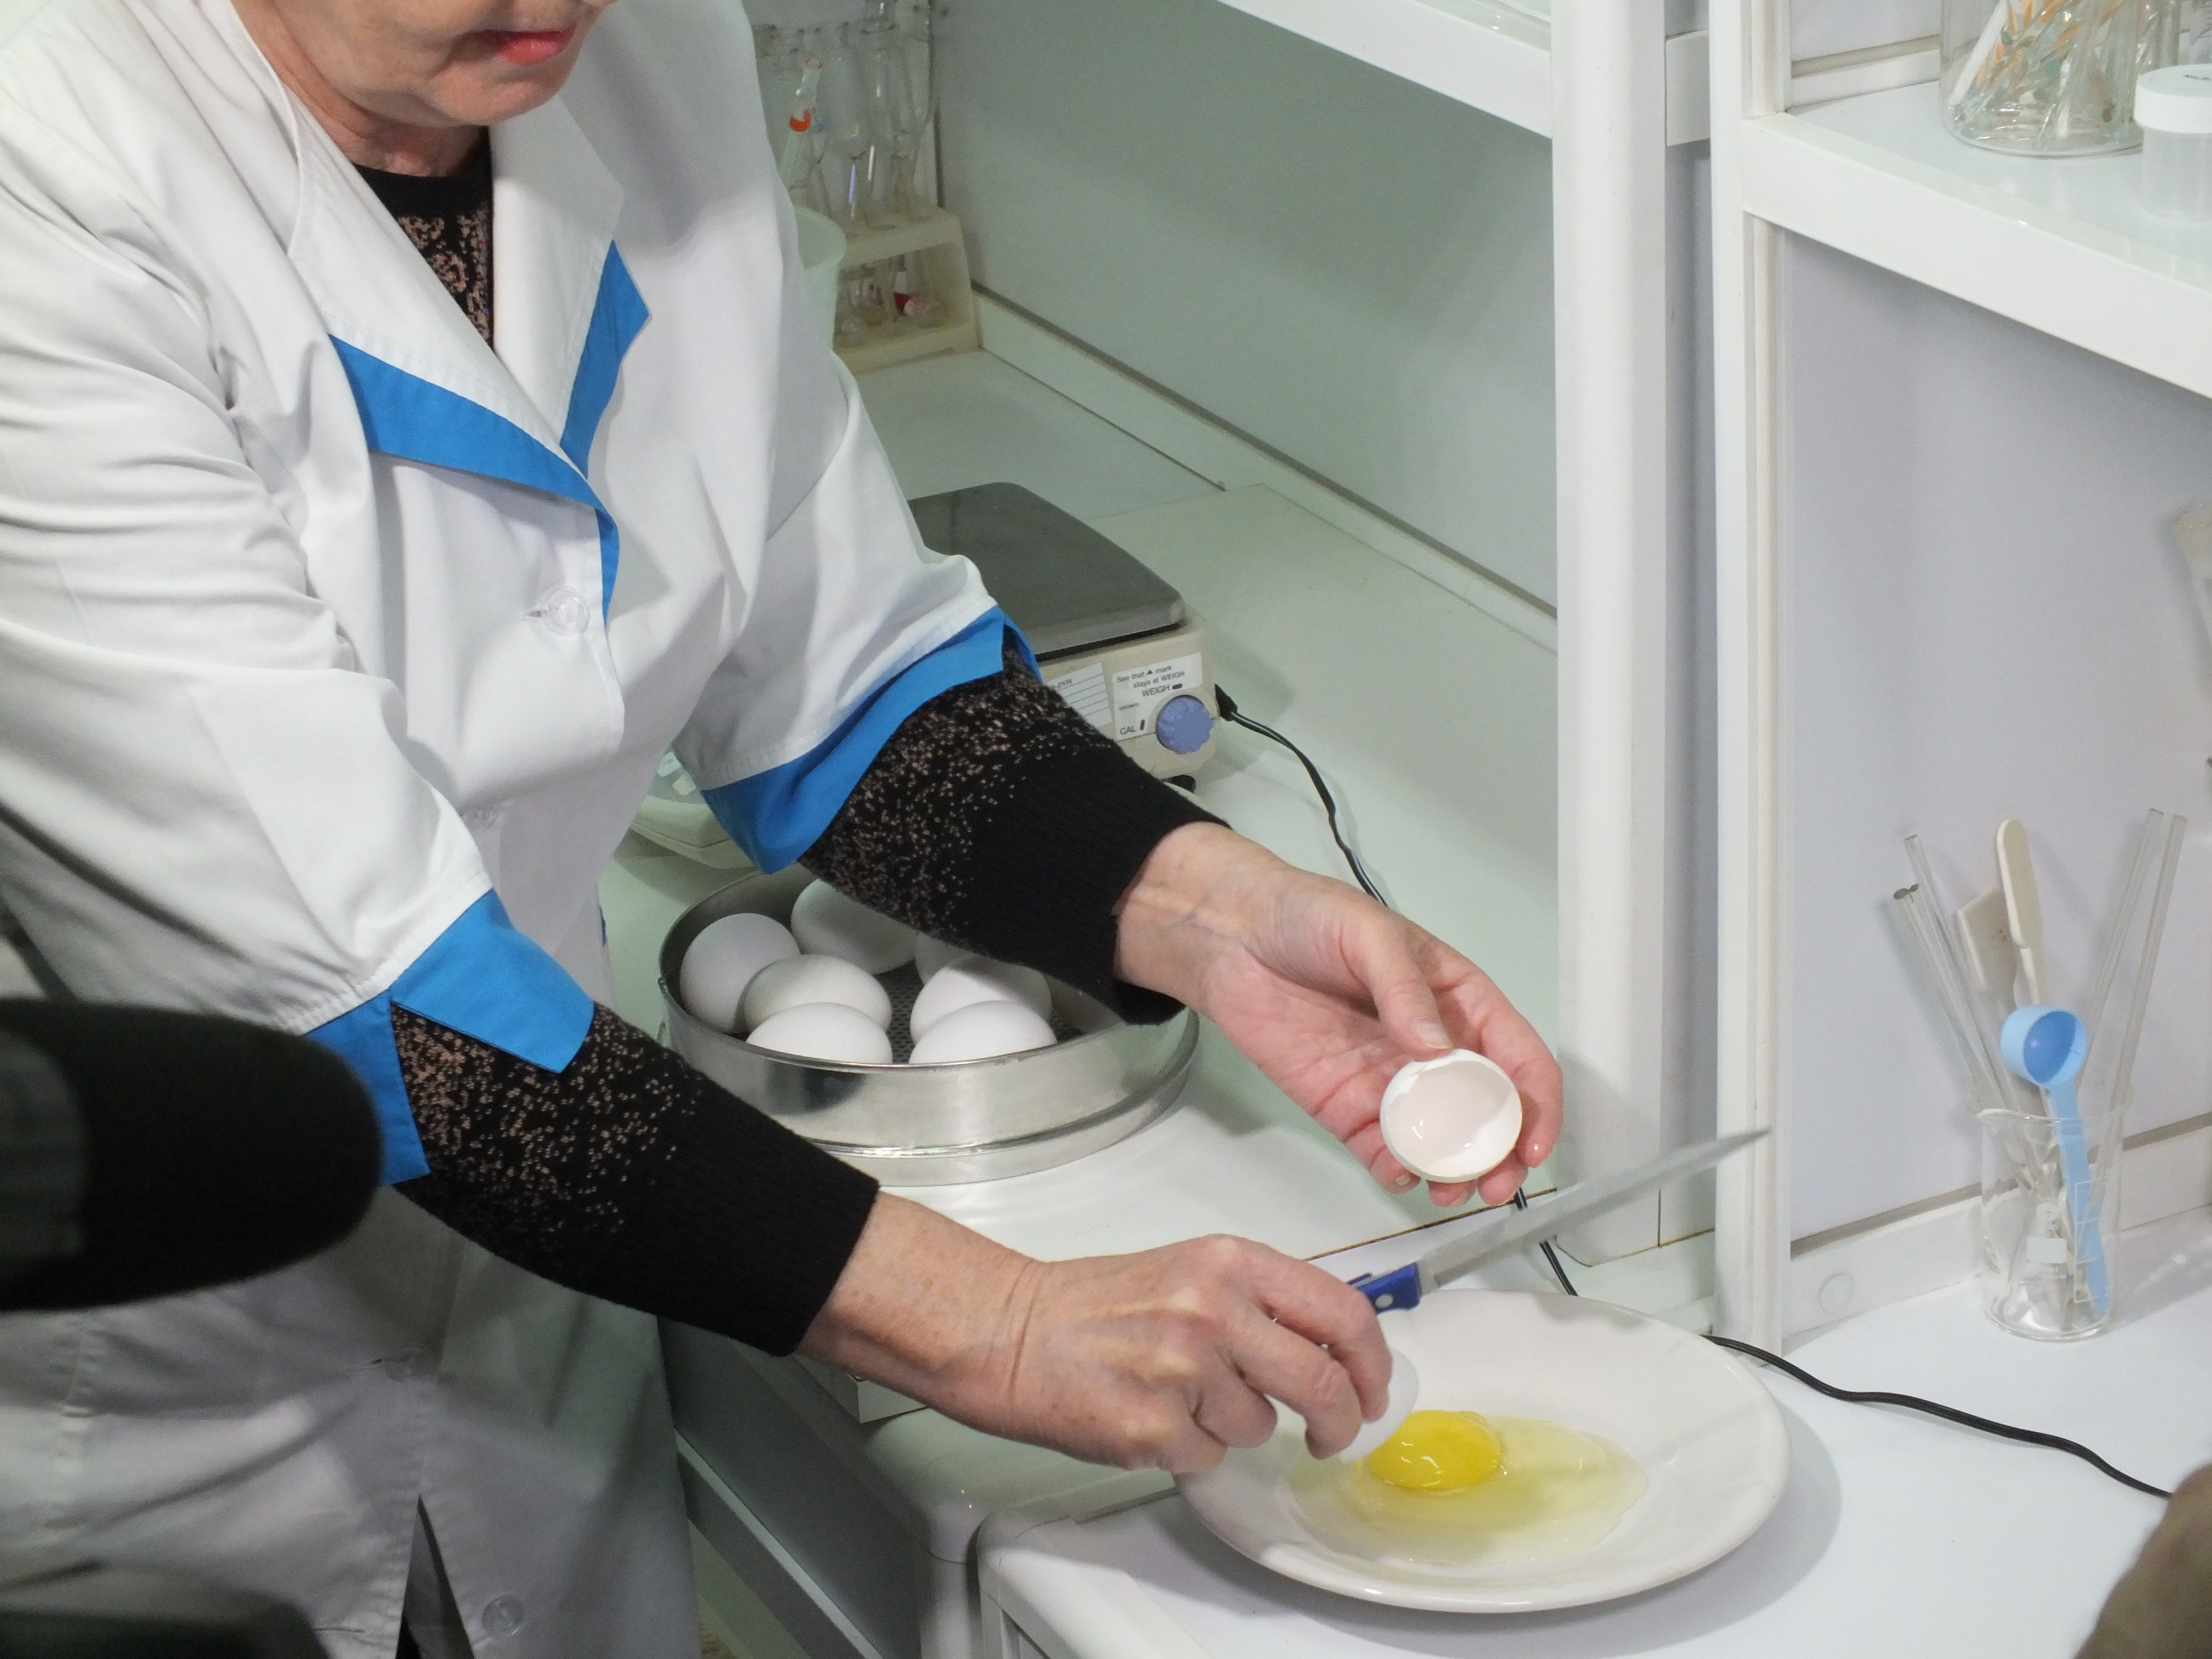 Не простое, а золотое: в Нижнем Новгороде проверили качество магазинных яиц - фото 3